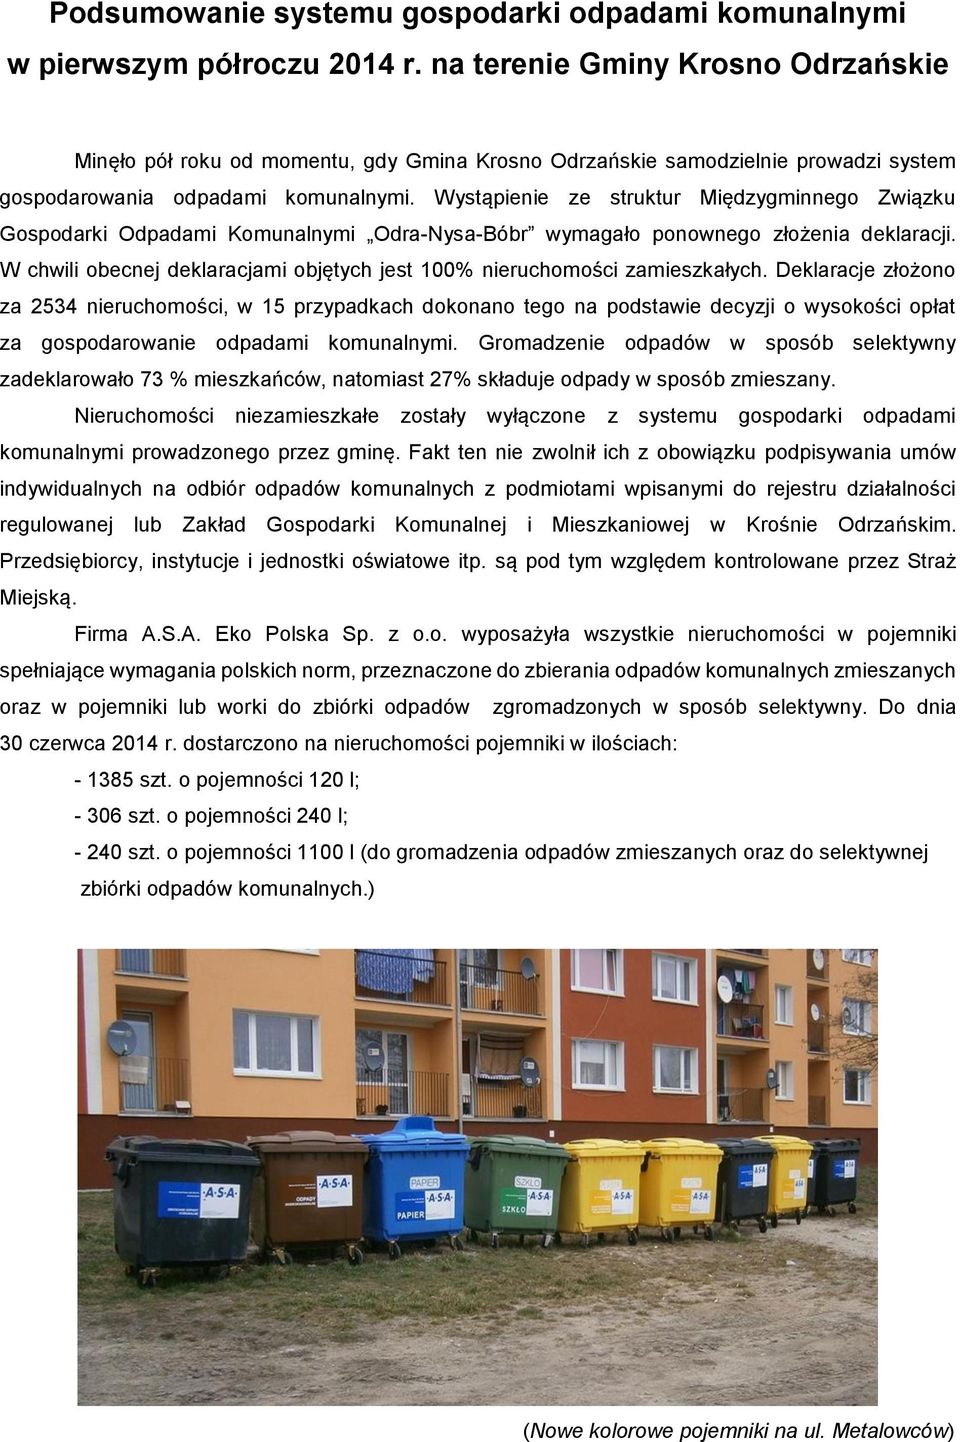 Wystąpienie ze struktur Międzygminnego Związku Gospodarki Odpadami Komunalnymi Odra-Nysa-Bóbr wymagało ponownego złożenia deklaracji.